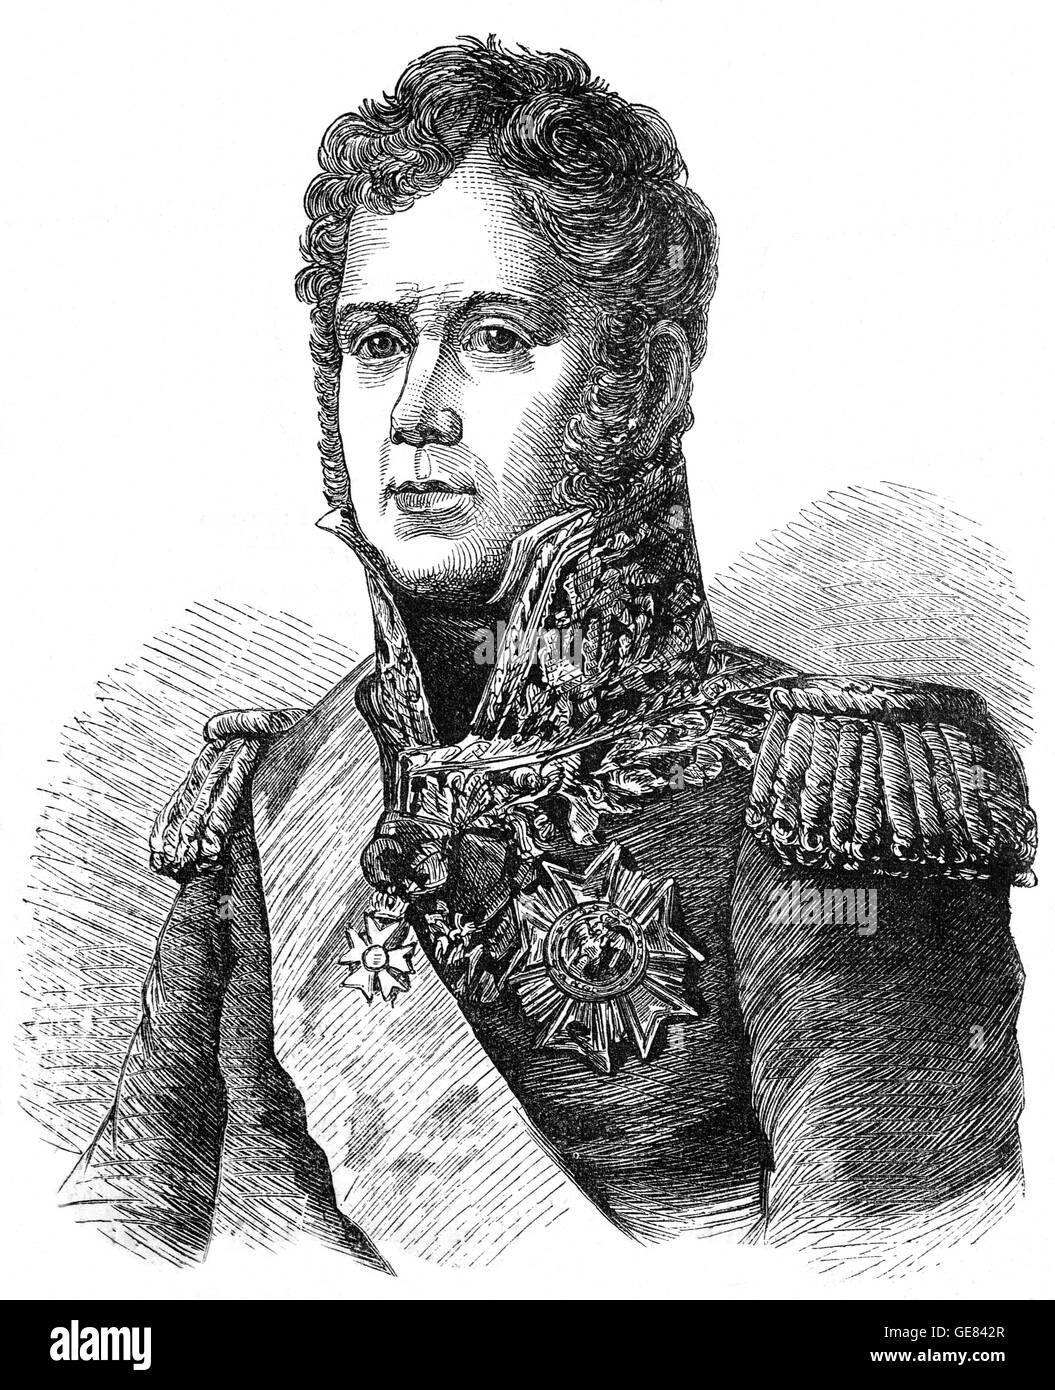 Michel Ney(1769 - 1815), connu comme le Maréchal Ney, était un soldat français et un commandant militaire pendant les guerres de la Révolution française et les guerres napoléoniennes. Il a servi dans l'invasion de 1812 en Russie et était l'un des 18 maréchaux de l'Empire créé par Napoléon. Banque D'Images